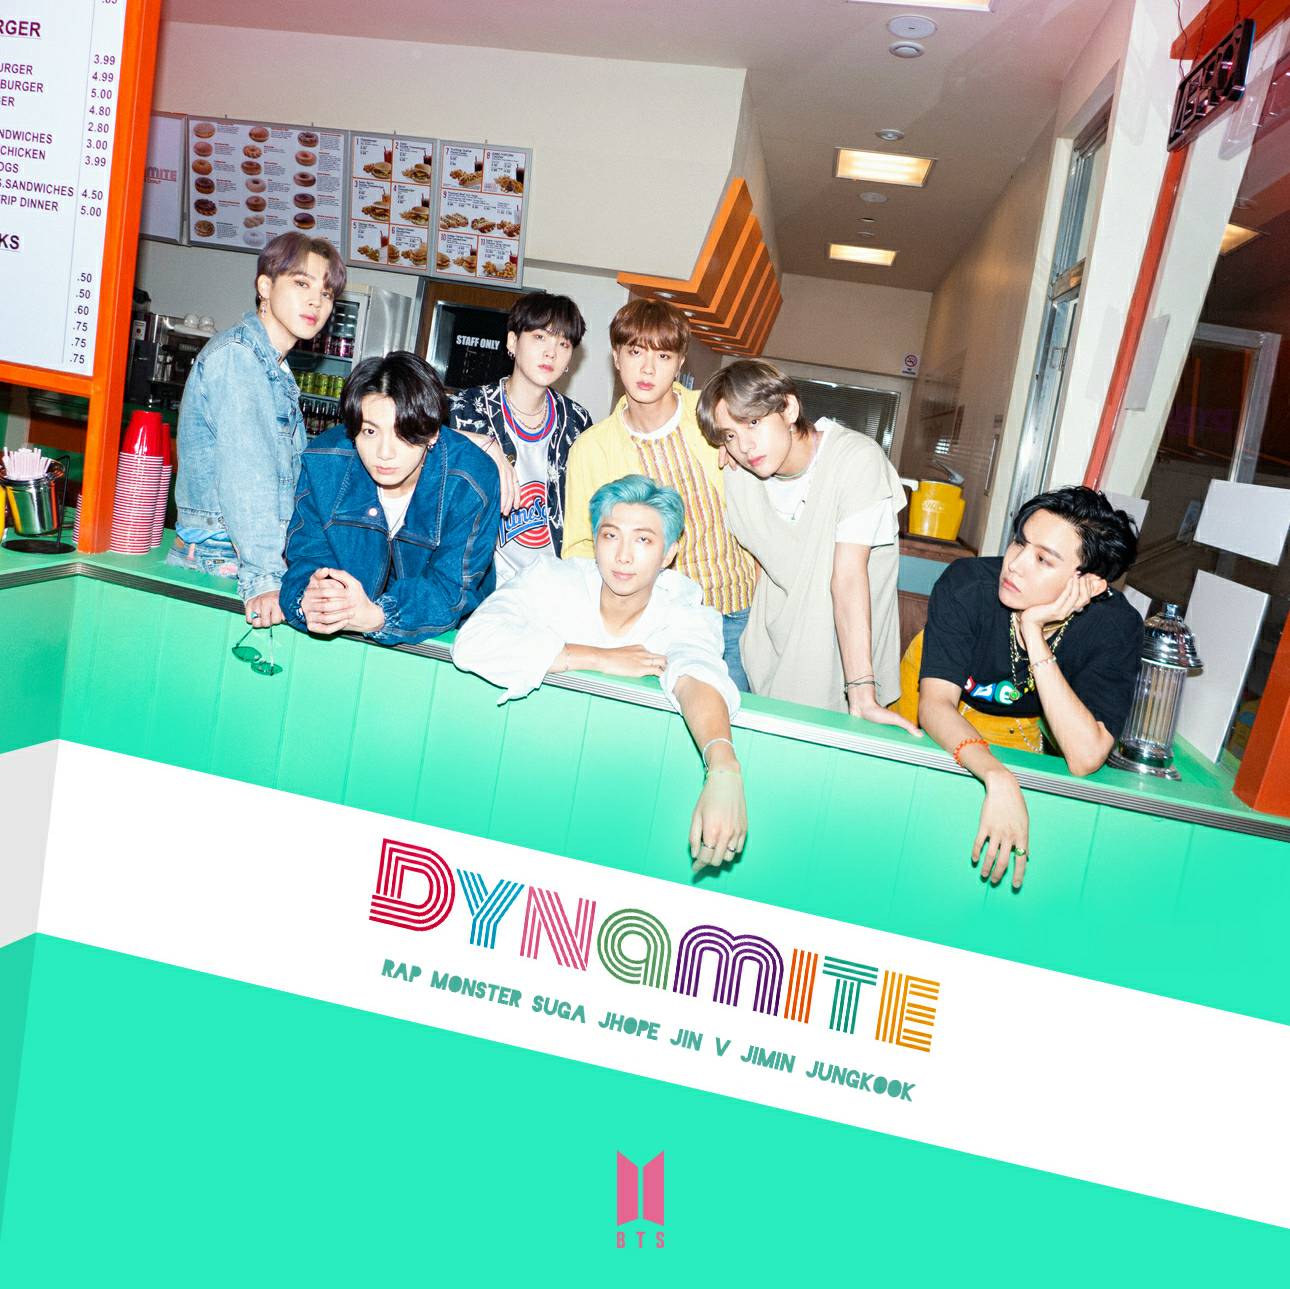 BTS DYNAMITE album cover by LEAlbum on DeviantArt